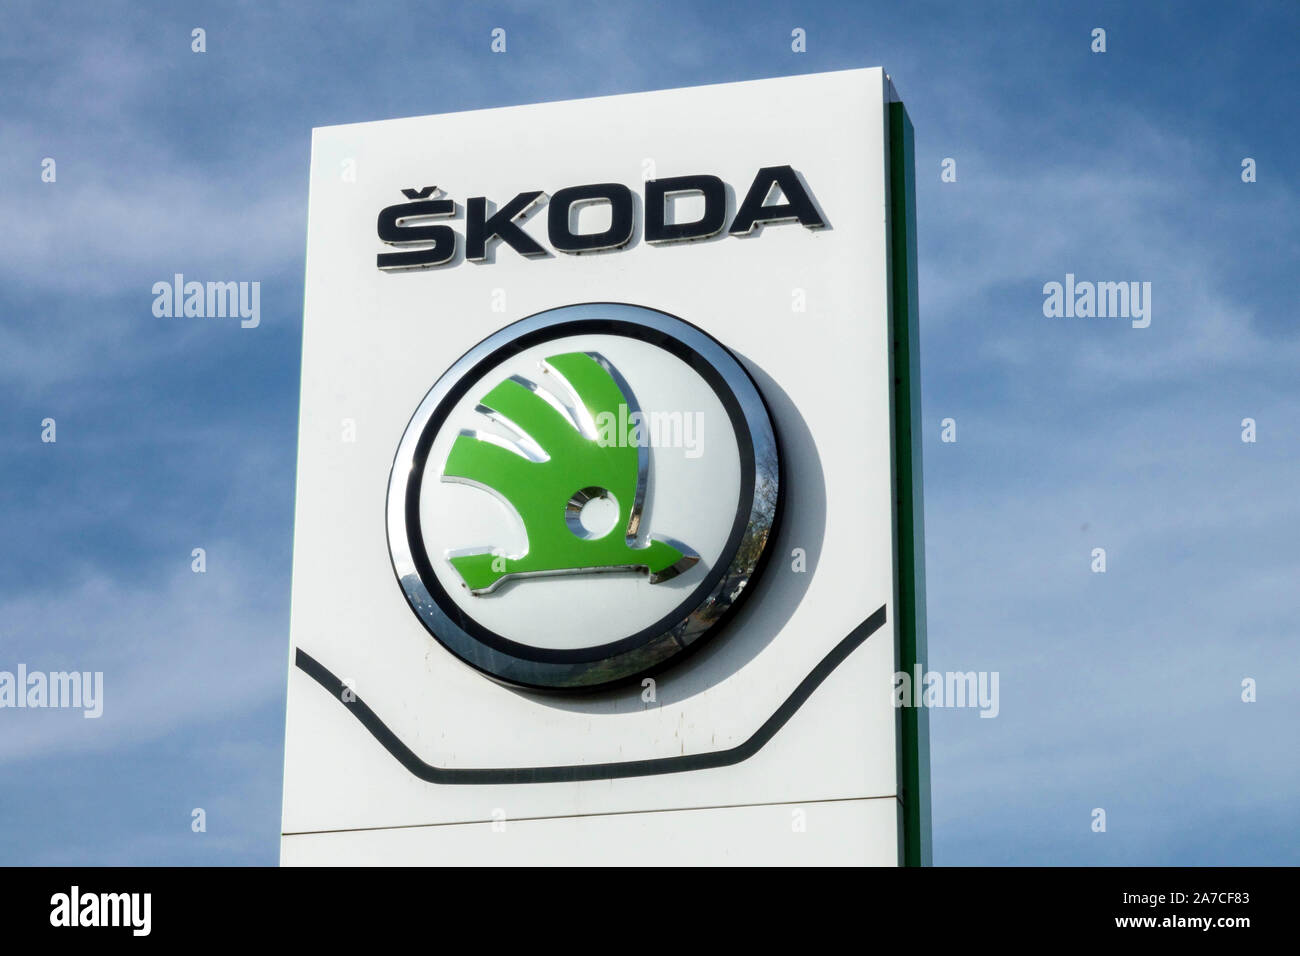 Skoda ad banner against blue sky Stock Photo